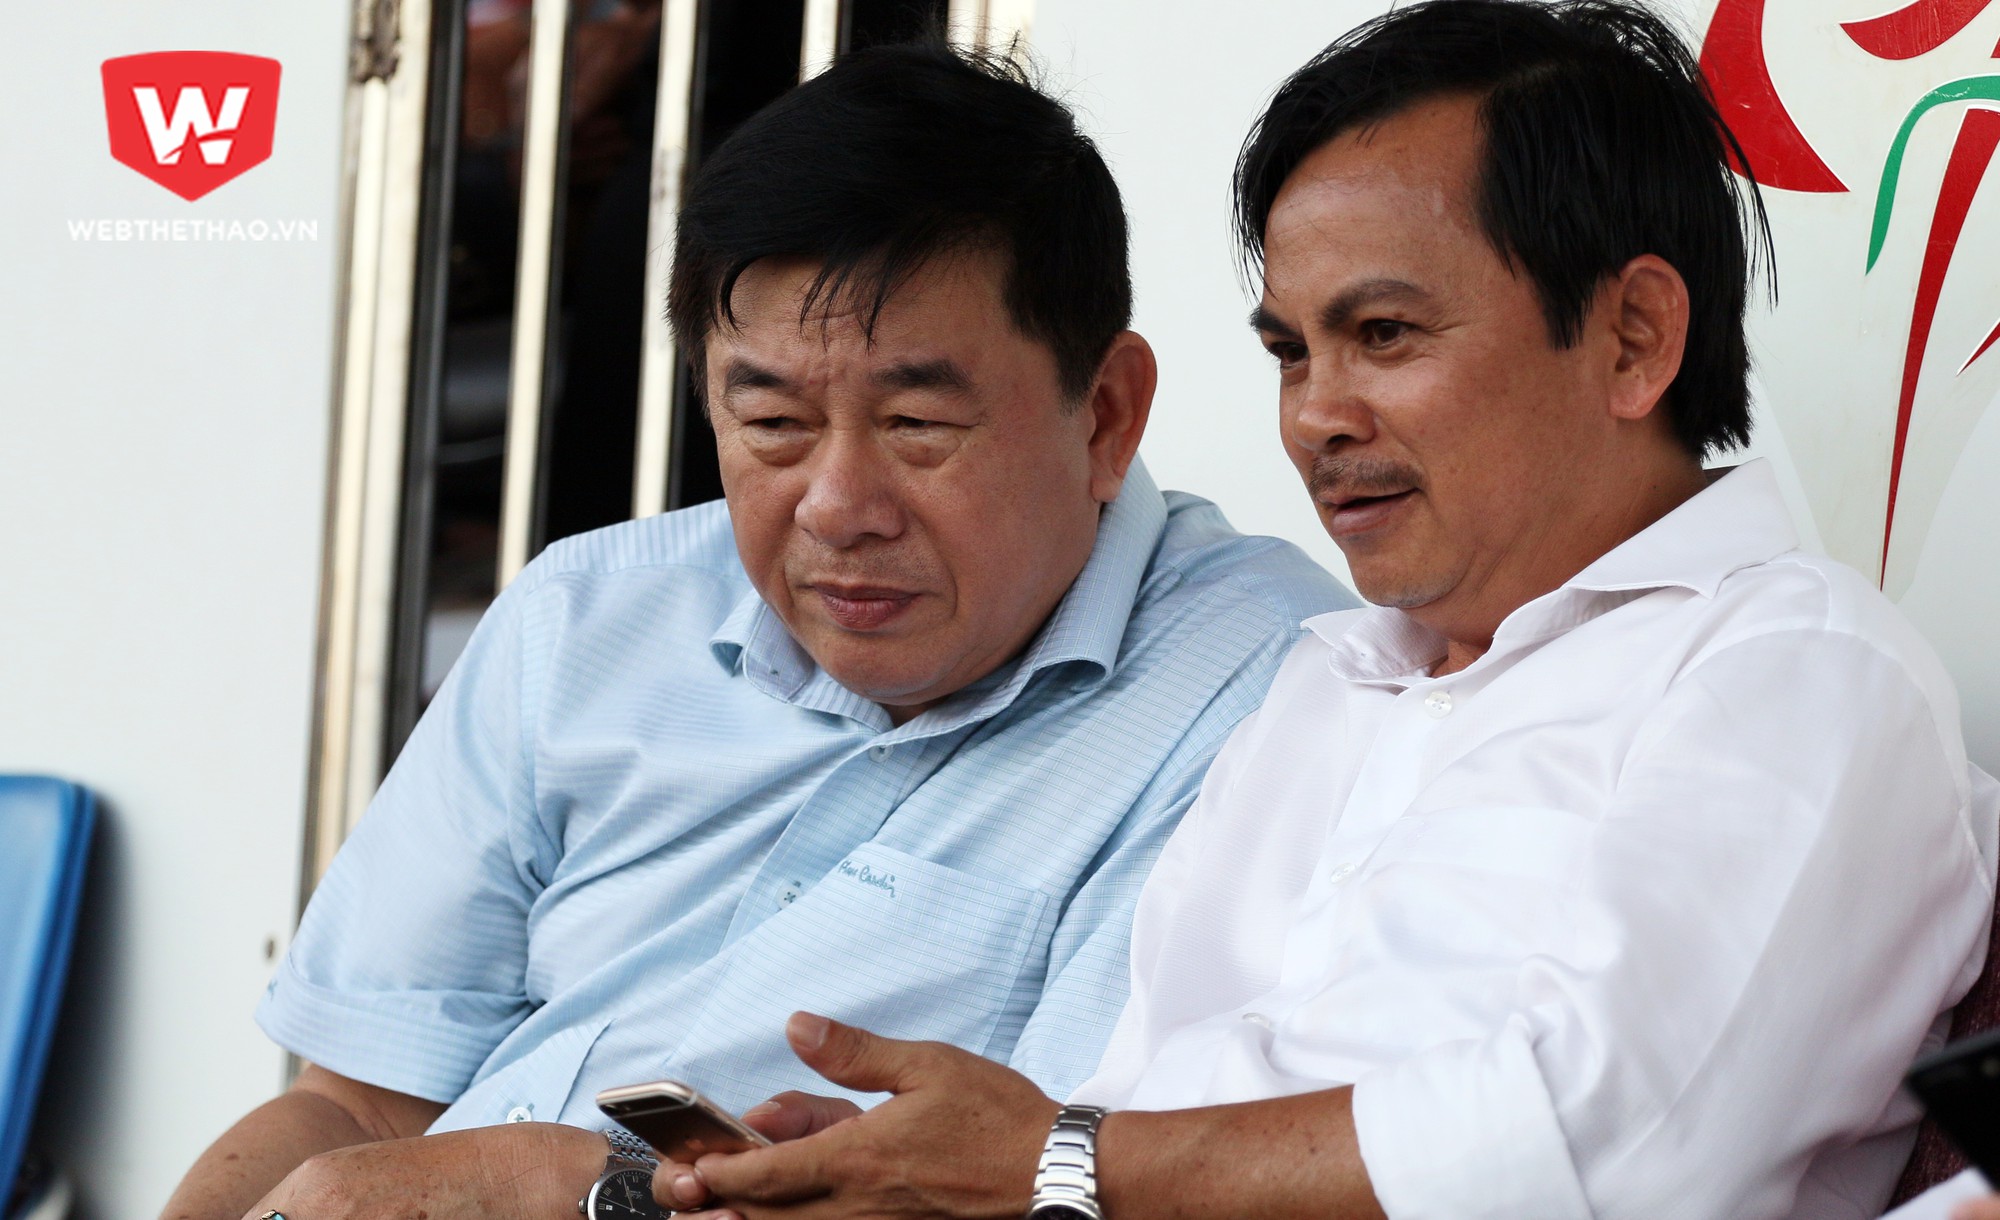 Nguyên chủ tịch Võ Thành Nhiệm cho rằng án phạt của 2 cầu thủ là quá nặng. Ảnh: Văn Nhân